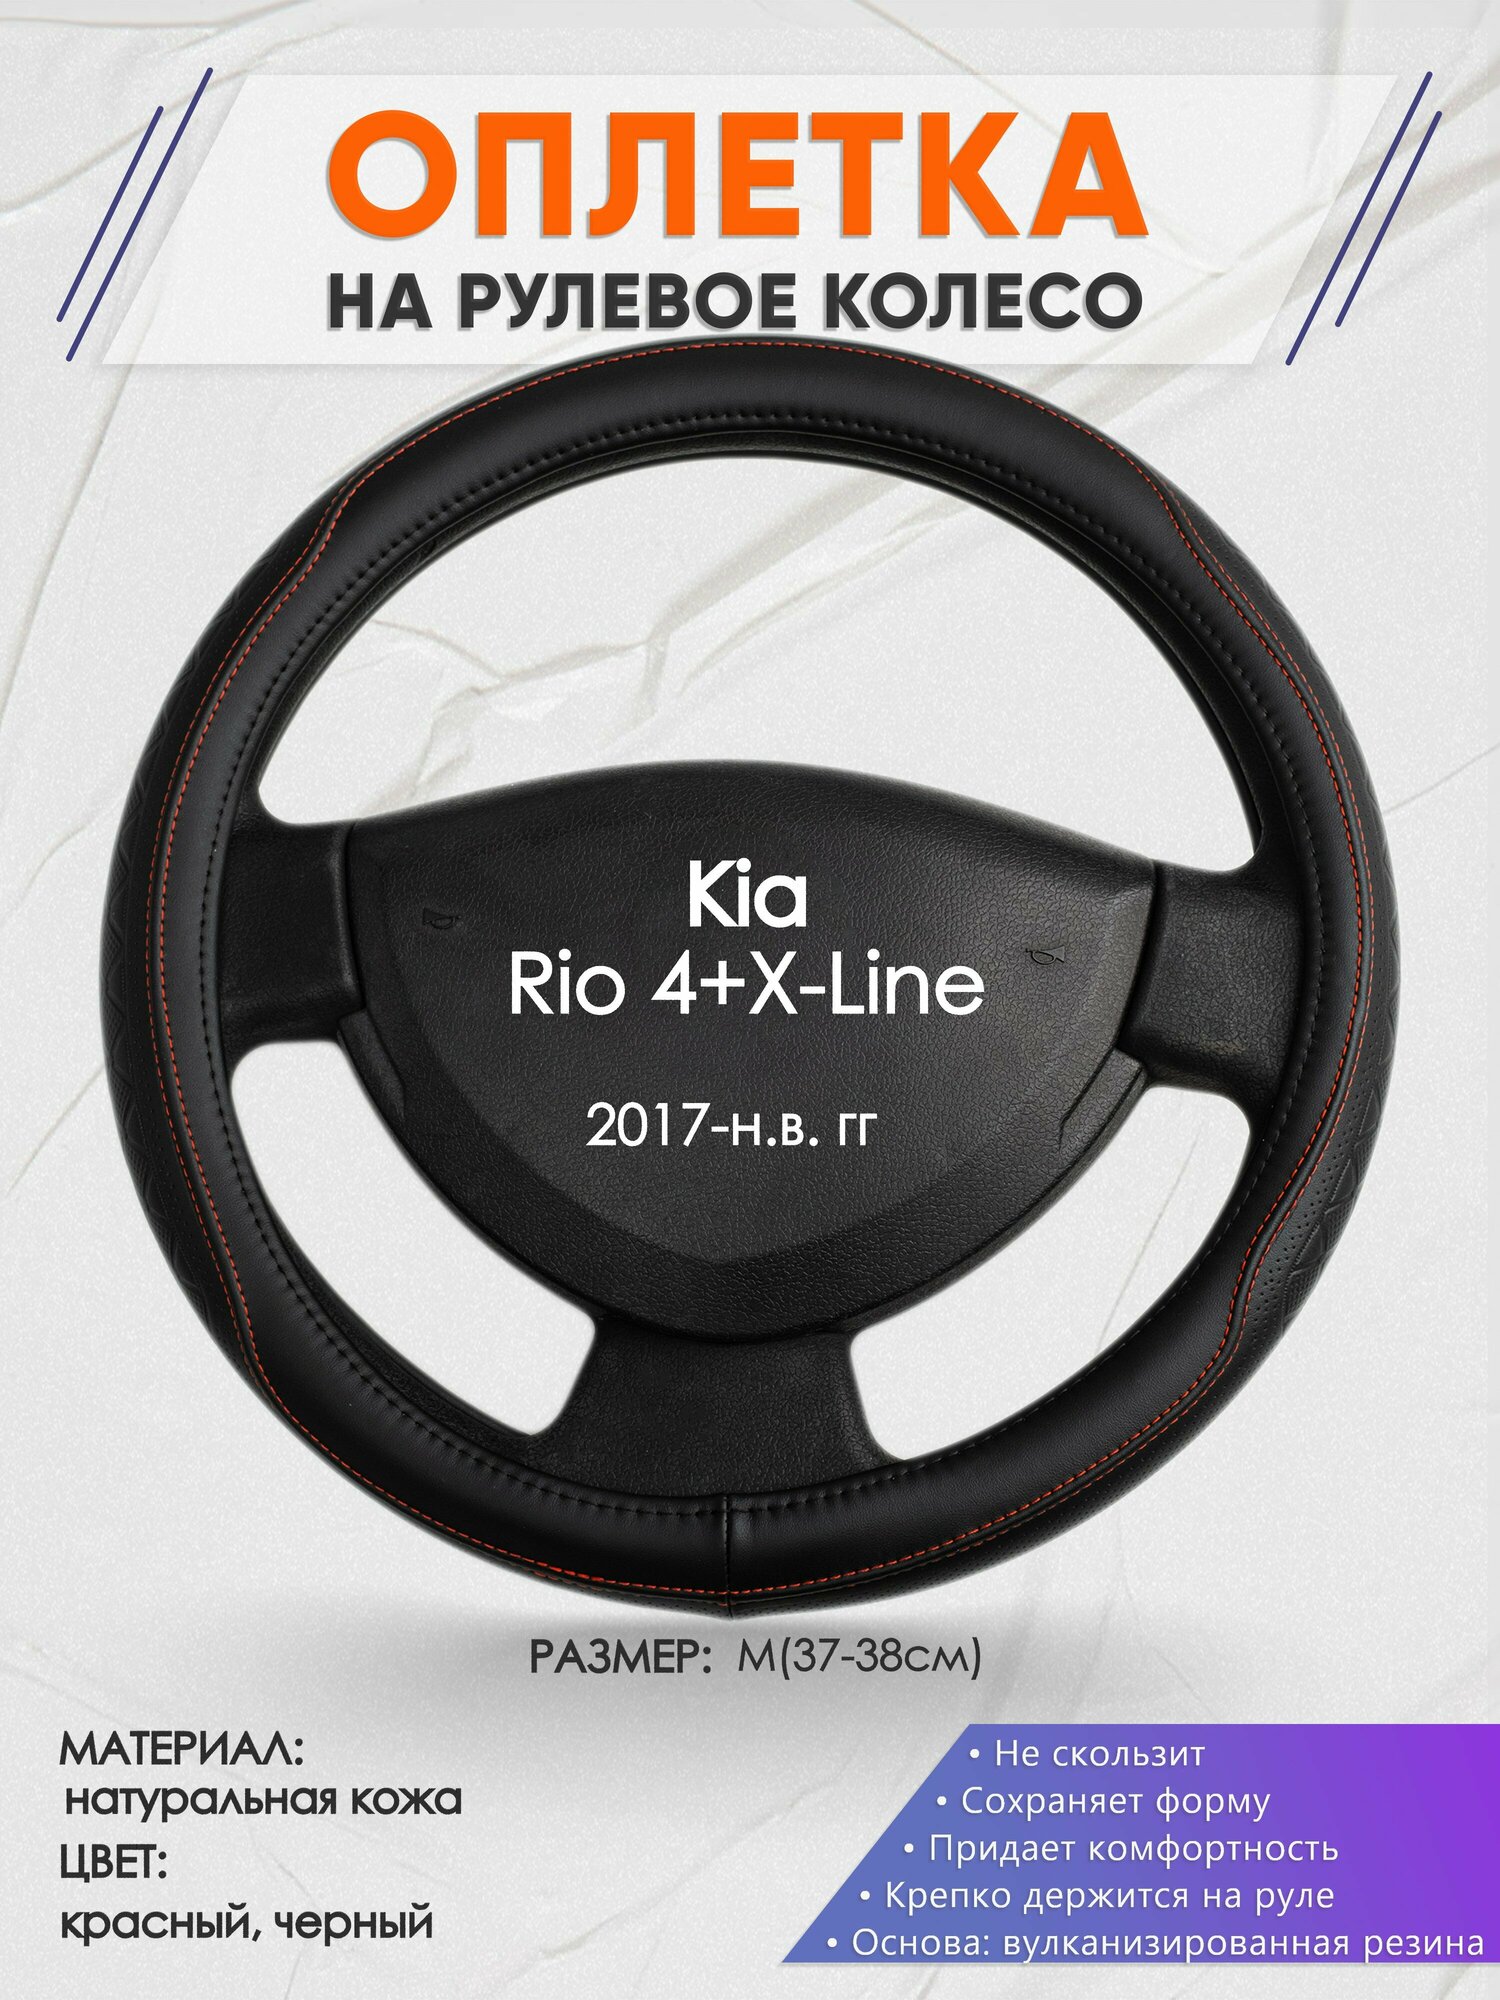 Оплетка на руль для Kia Rio 4+X-Line(Киа Рио 4 / Икс Лайн) 2017-н. в, M(37-38см), Натуральная кожа 90